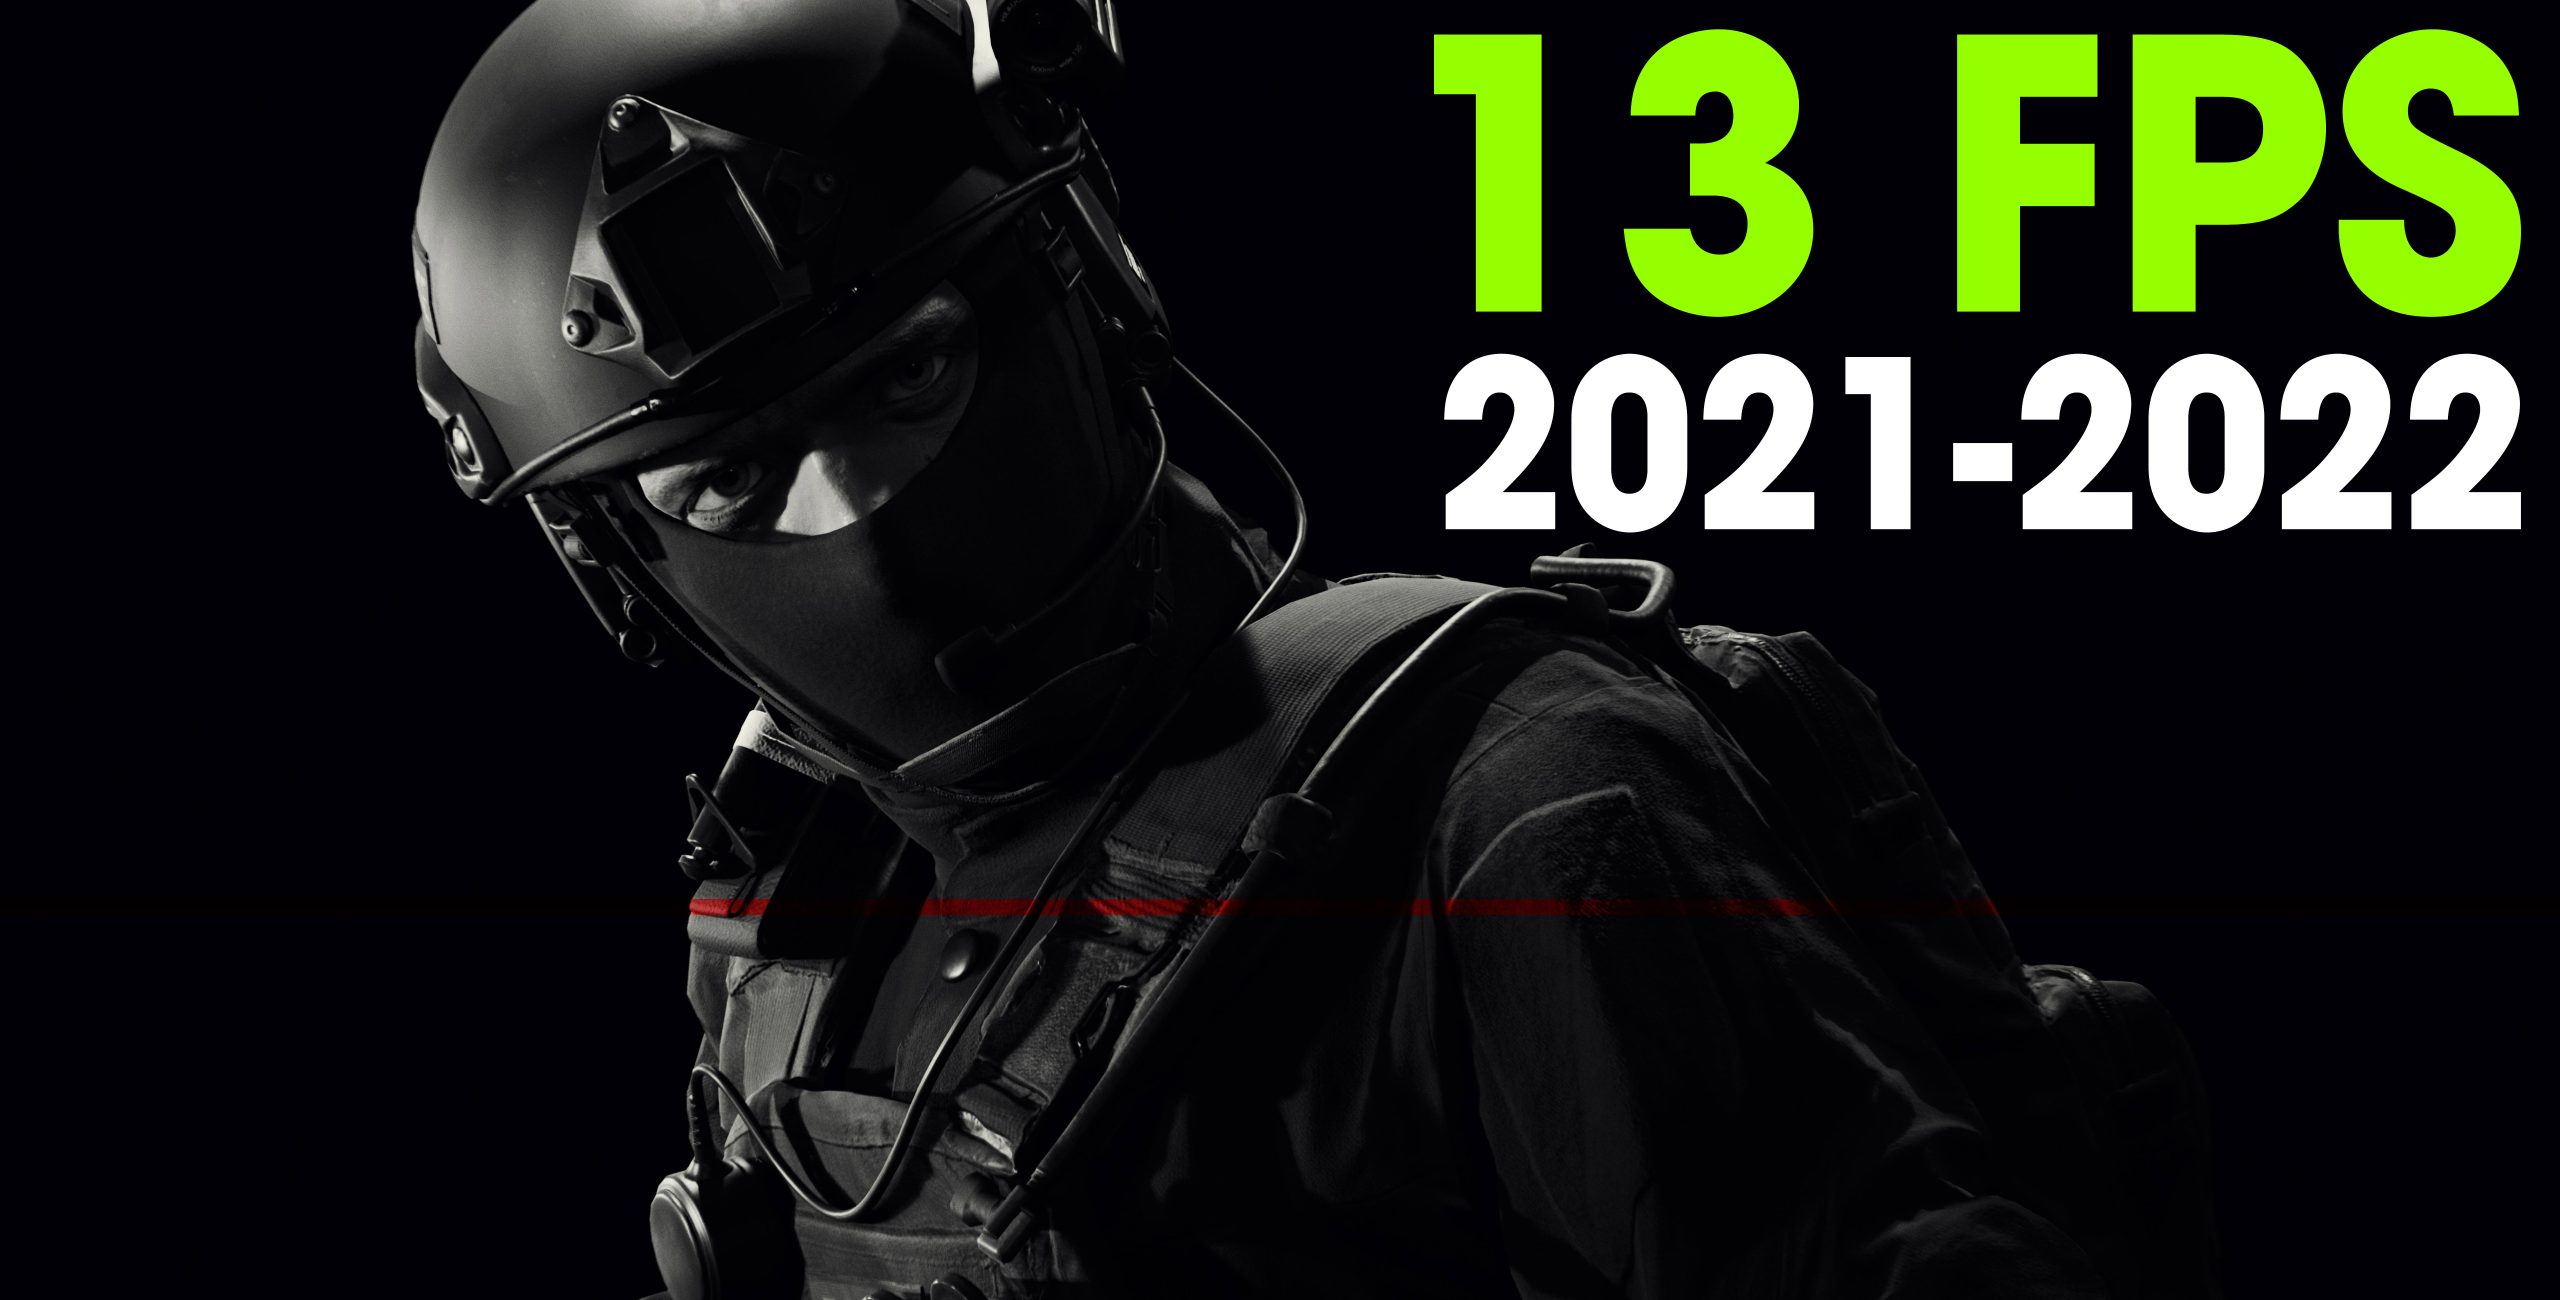 13 FPS prévus en 2021-2022